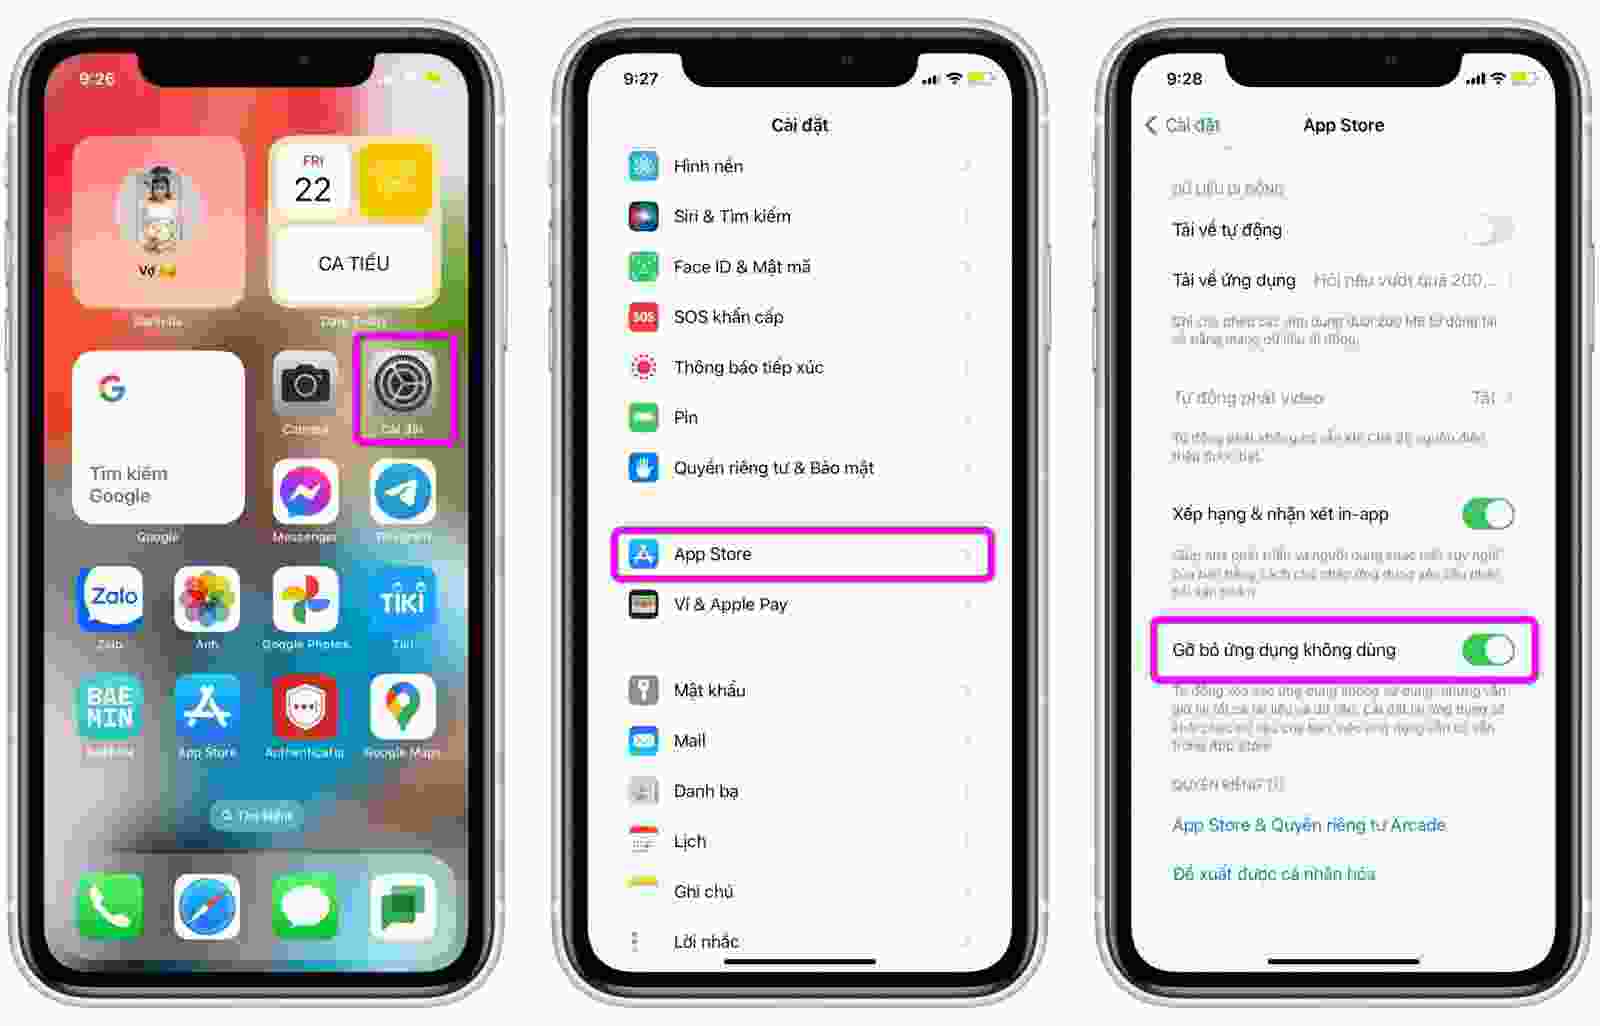 Xóa ứng dụng iPhone: Đã đến lúc làm sạch chiếc iPhone của bạn! Các tính năng mới nhất của Apple đang hỗ trợ cho việc xóa ứng dụng trở nên nhanh chóng và hiệu quả hơn bao giờ hết. Với việc giải phóng không gian bộ nhớ, máy của bạn sẽ hoạt động mượt mà và hiệu quả hơn, giúp bạn thực hiện các tác vụ hàng ngày một cách nhanh chóng và tiện lợi hơn.